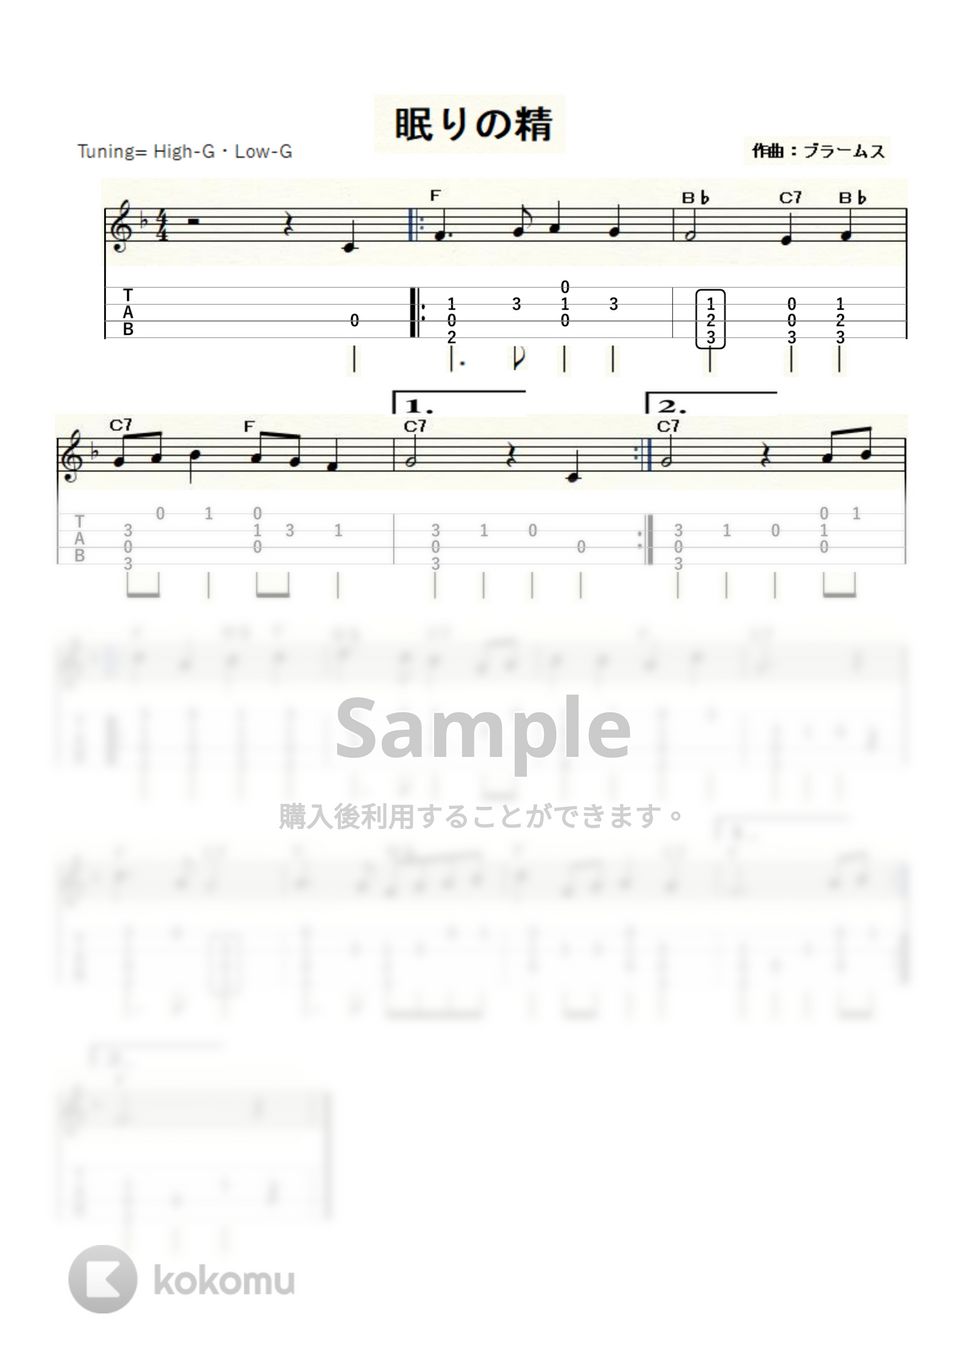 ブラームス - 眠りの精 (ｳｸﾚﾚｿﾛ / High-G・L ow-G / 初級～中級) by ukulelepapa